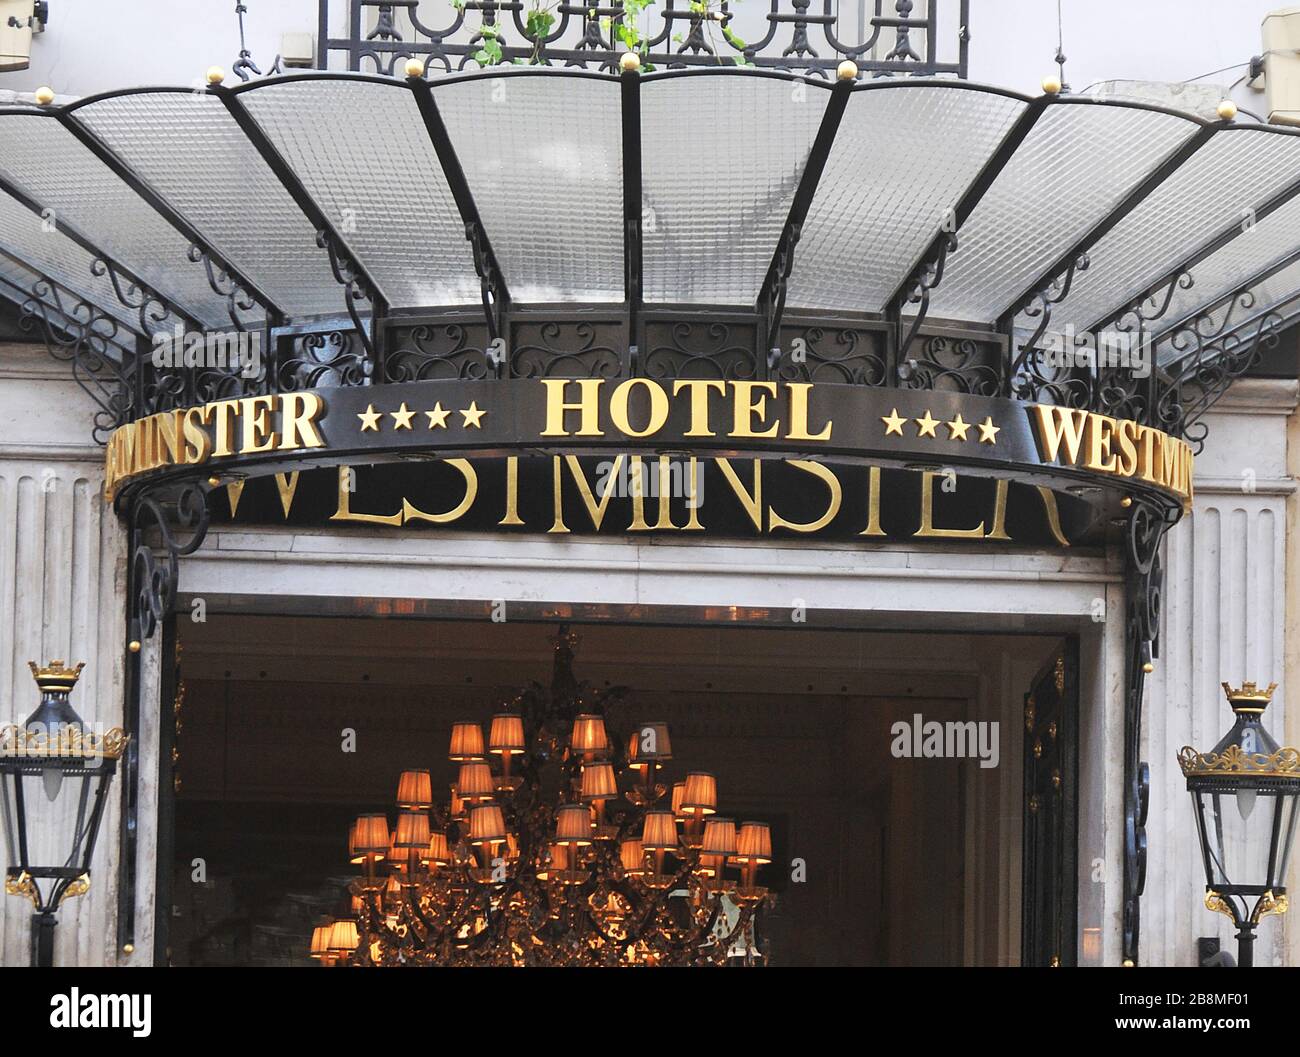 Westminster hotel, rue de la Paix, Paris France Stock Photo